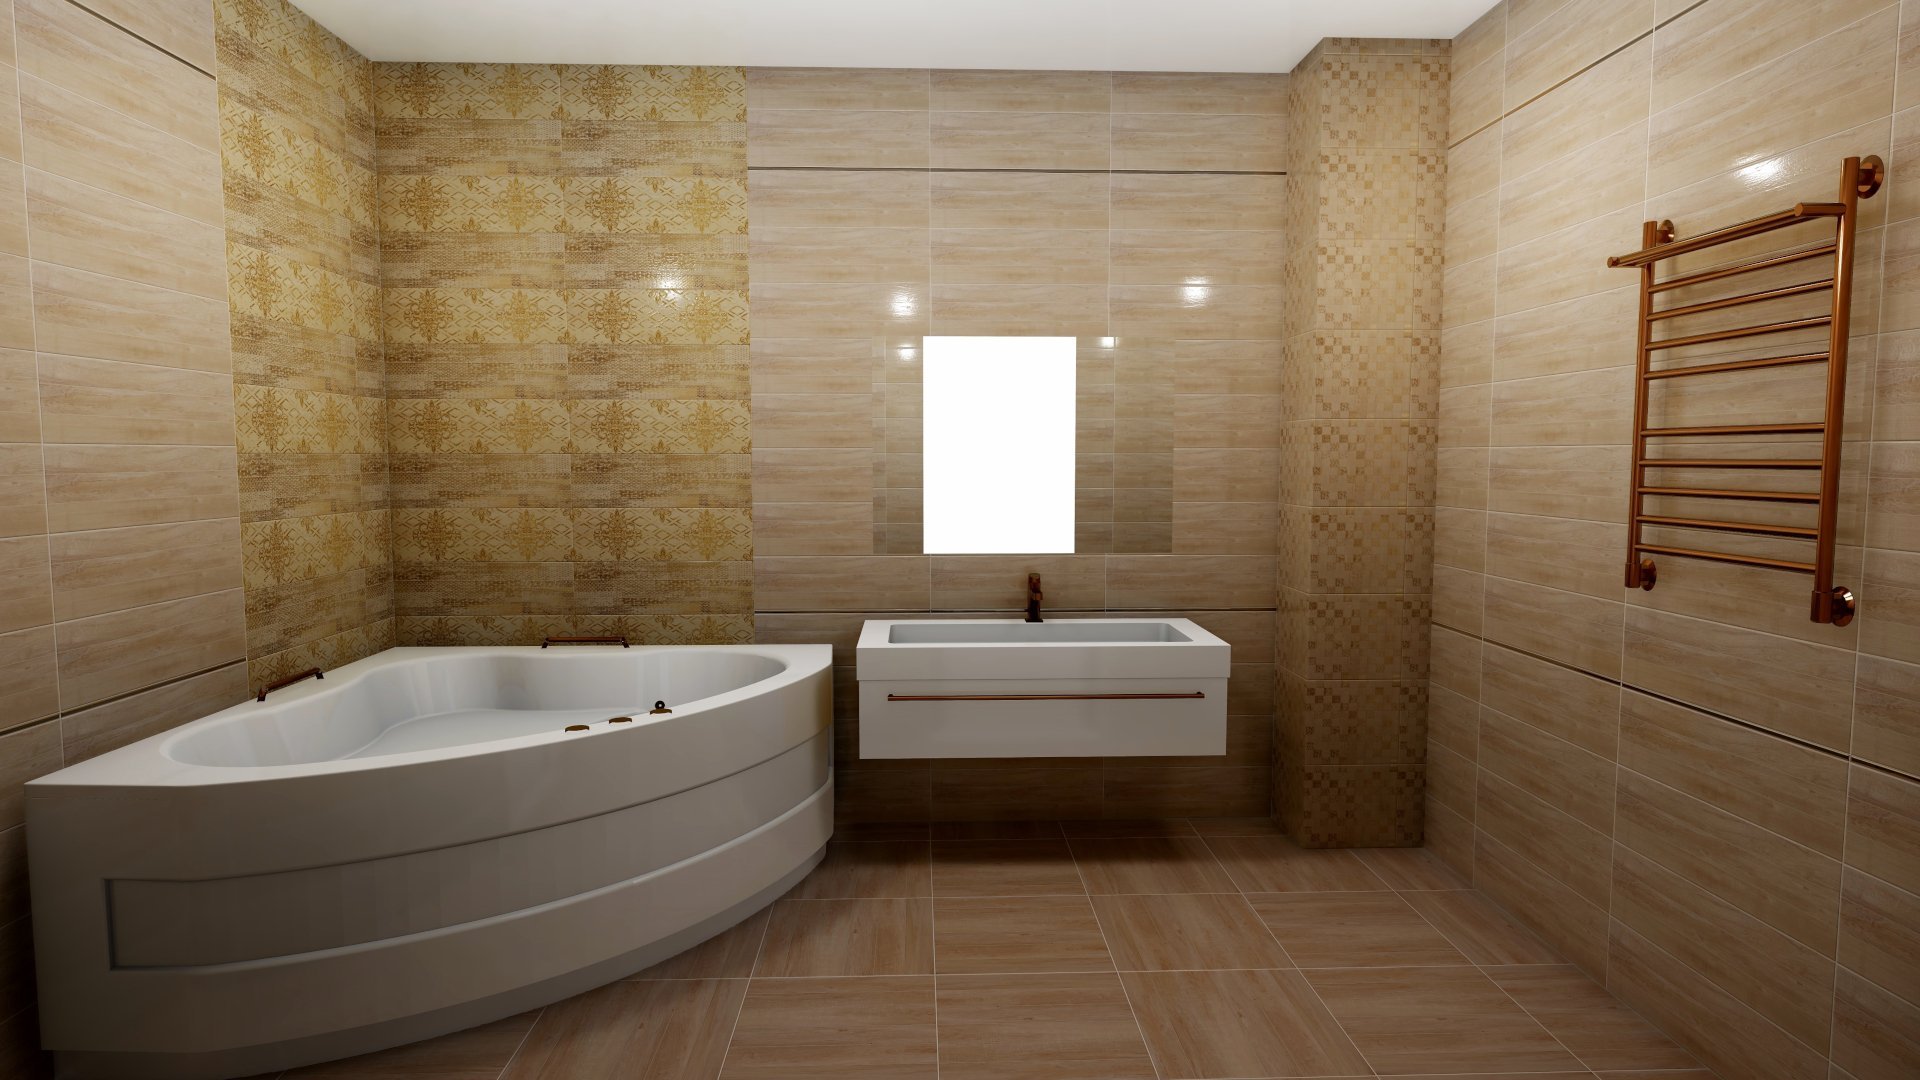 Декоративные панели для ванной. Alta Cera плитка. Отделка ванной комнаты панелями. Панели для отделки стен в ванной. Панели в ванную комнату под дерево.